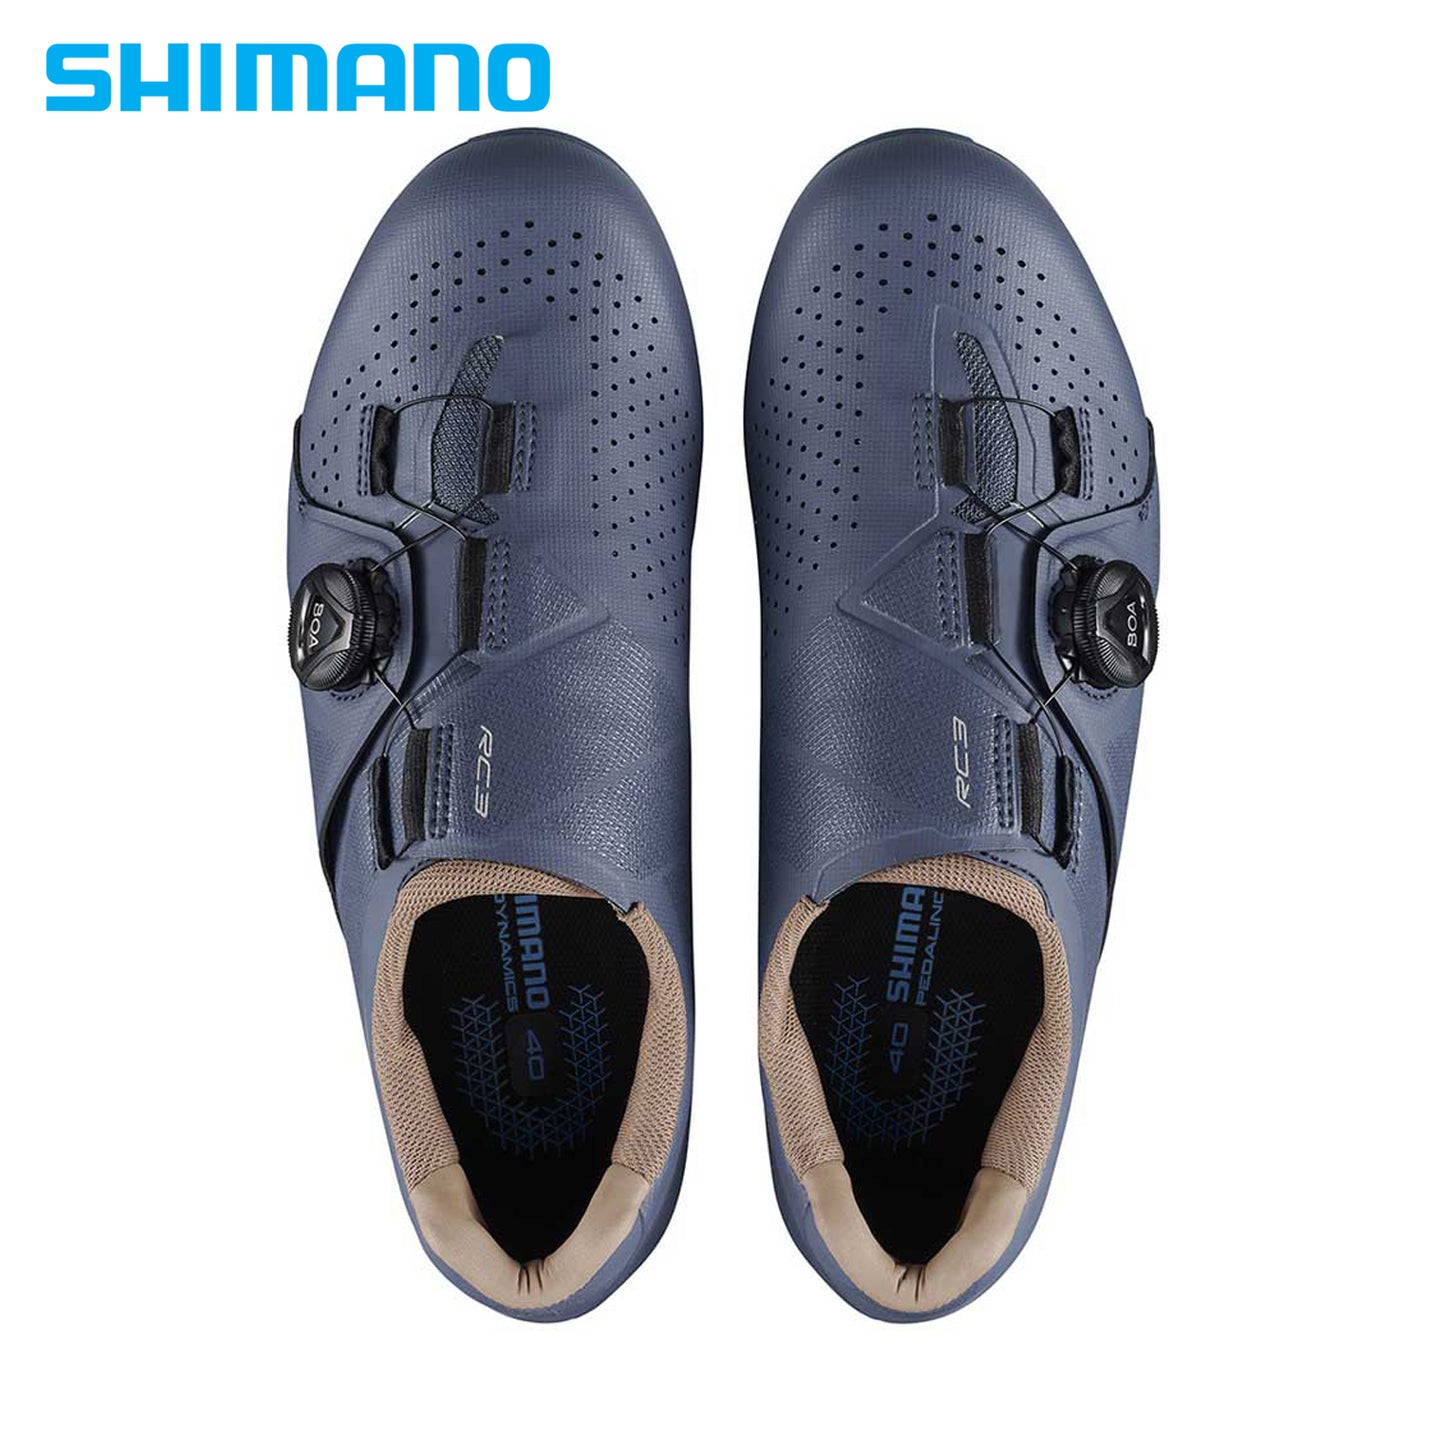 Shimano RC300 Women On-Road Bike Shoes (SH-RC300 Women) - Indigo Blue